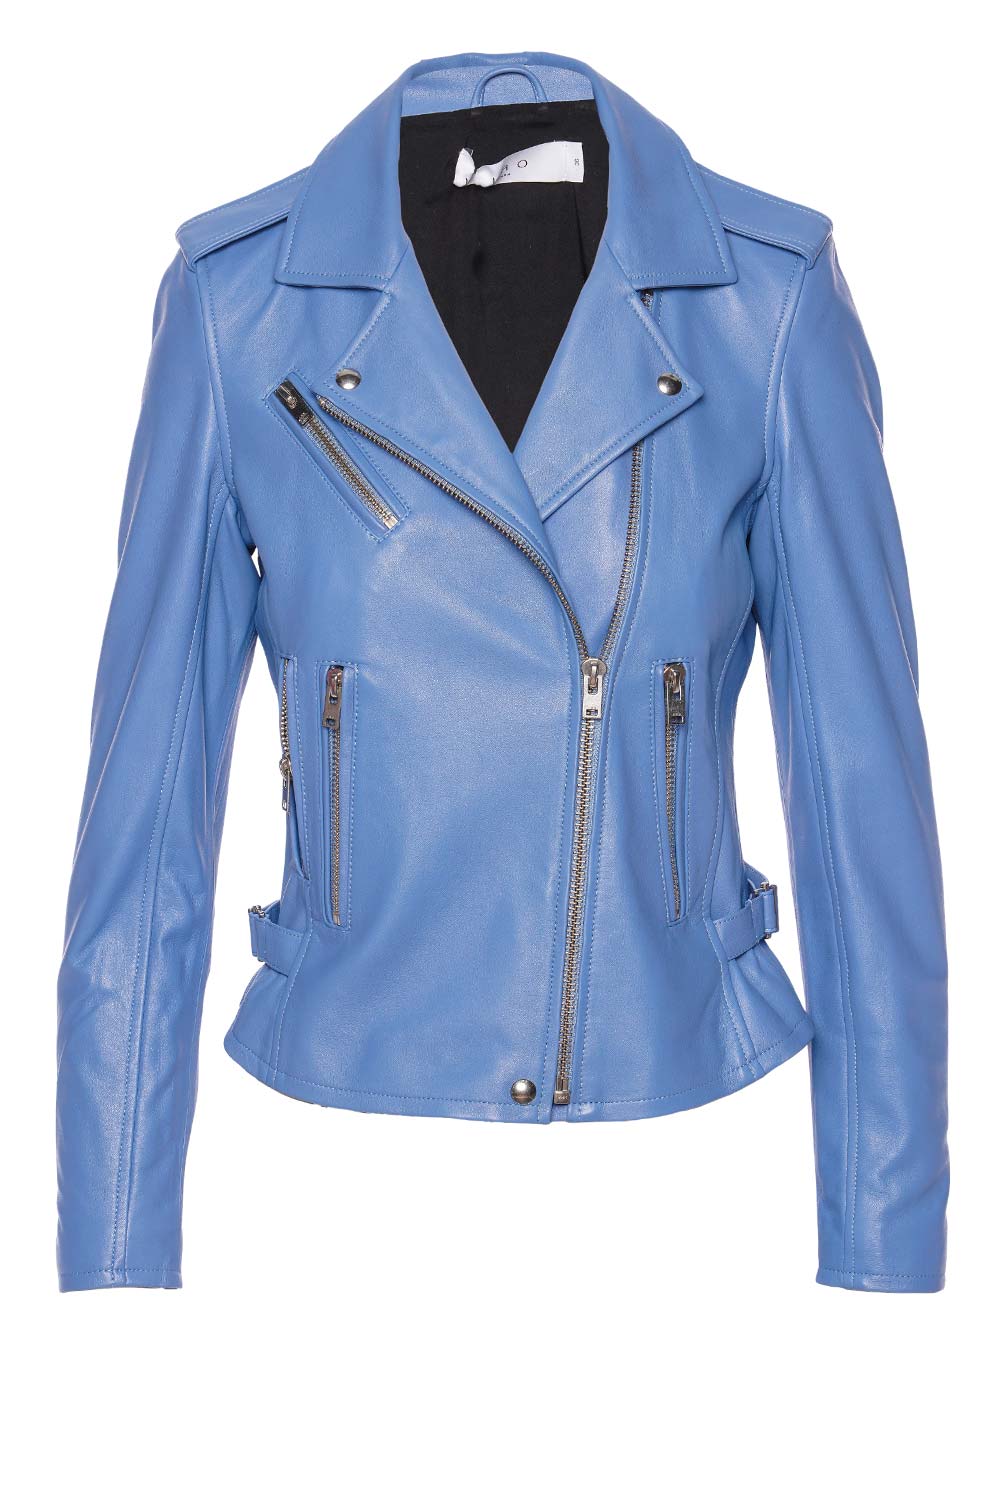 IRO Newhan Azur Blue Leather Moto Jacket